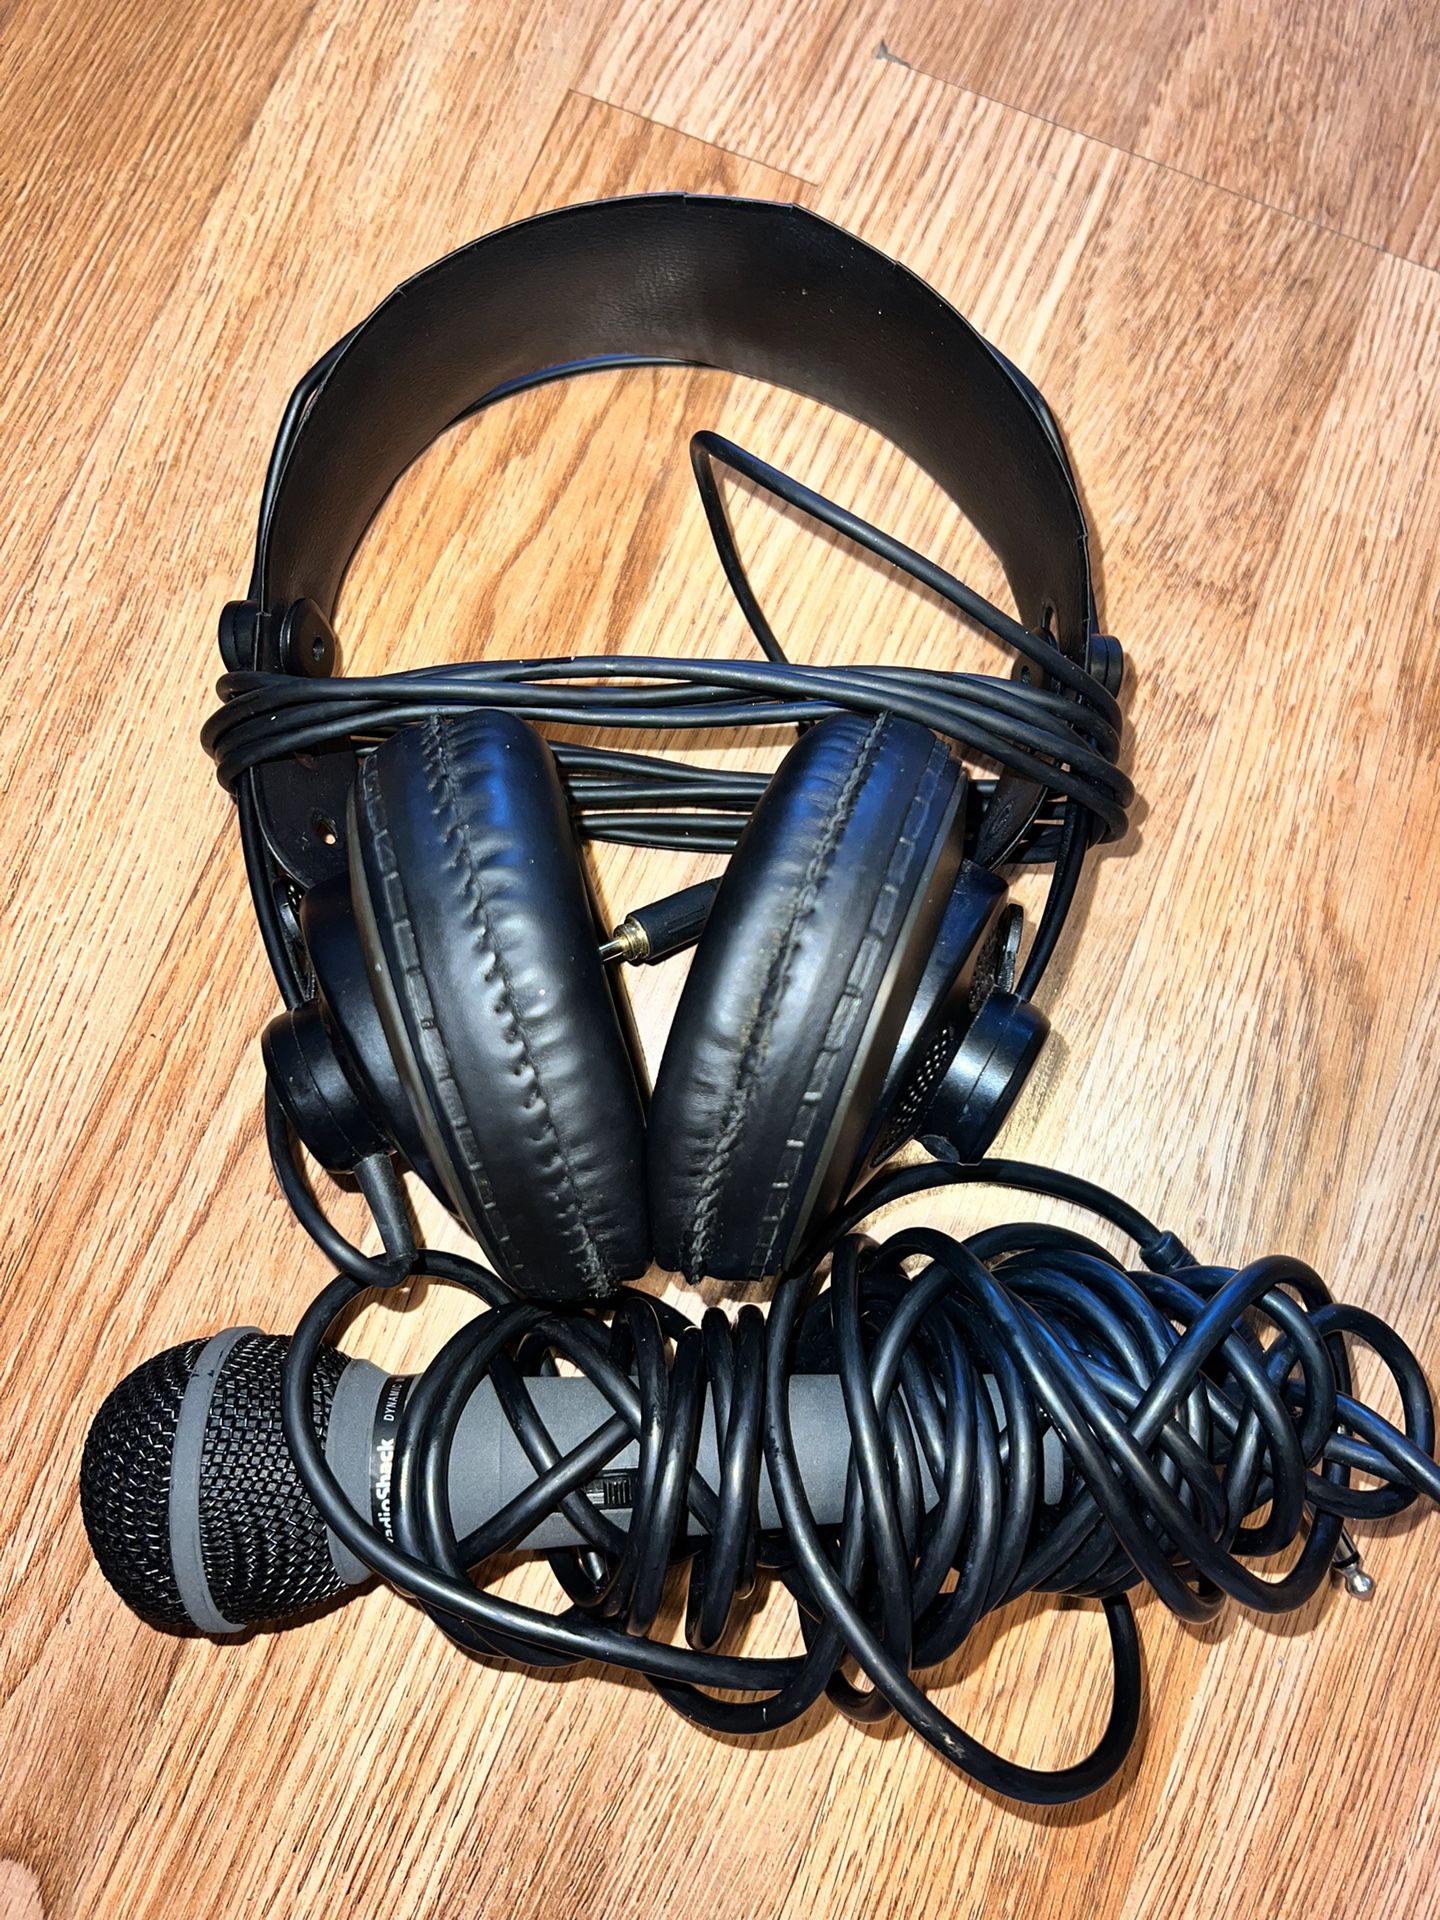 Studio Reference Headphones 